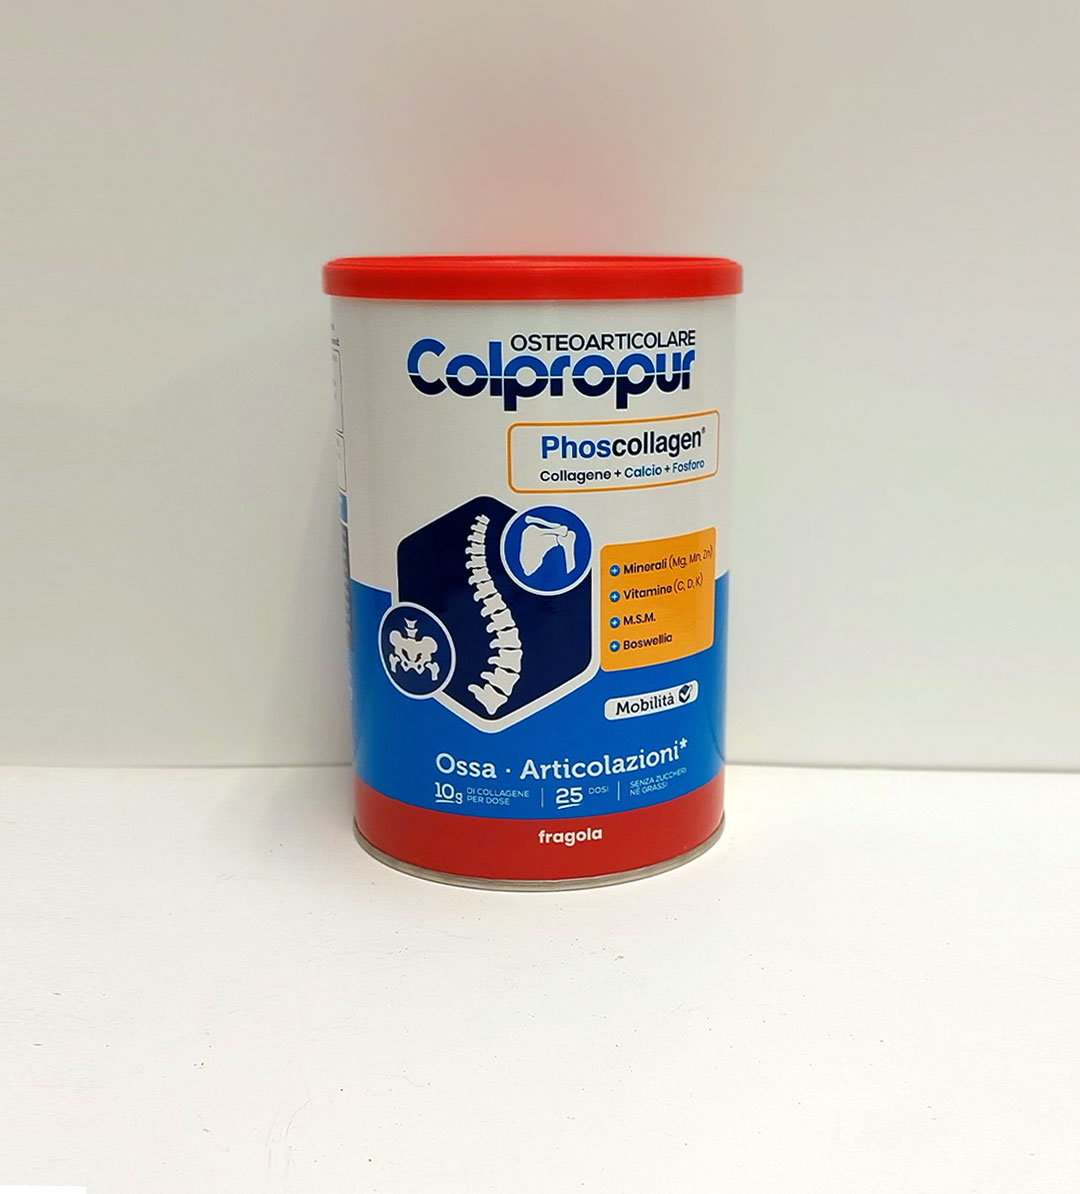 Colpropur - Phoscollagen per Ossa e Articolazioni